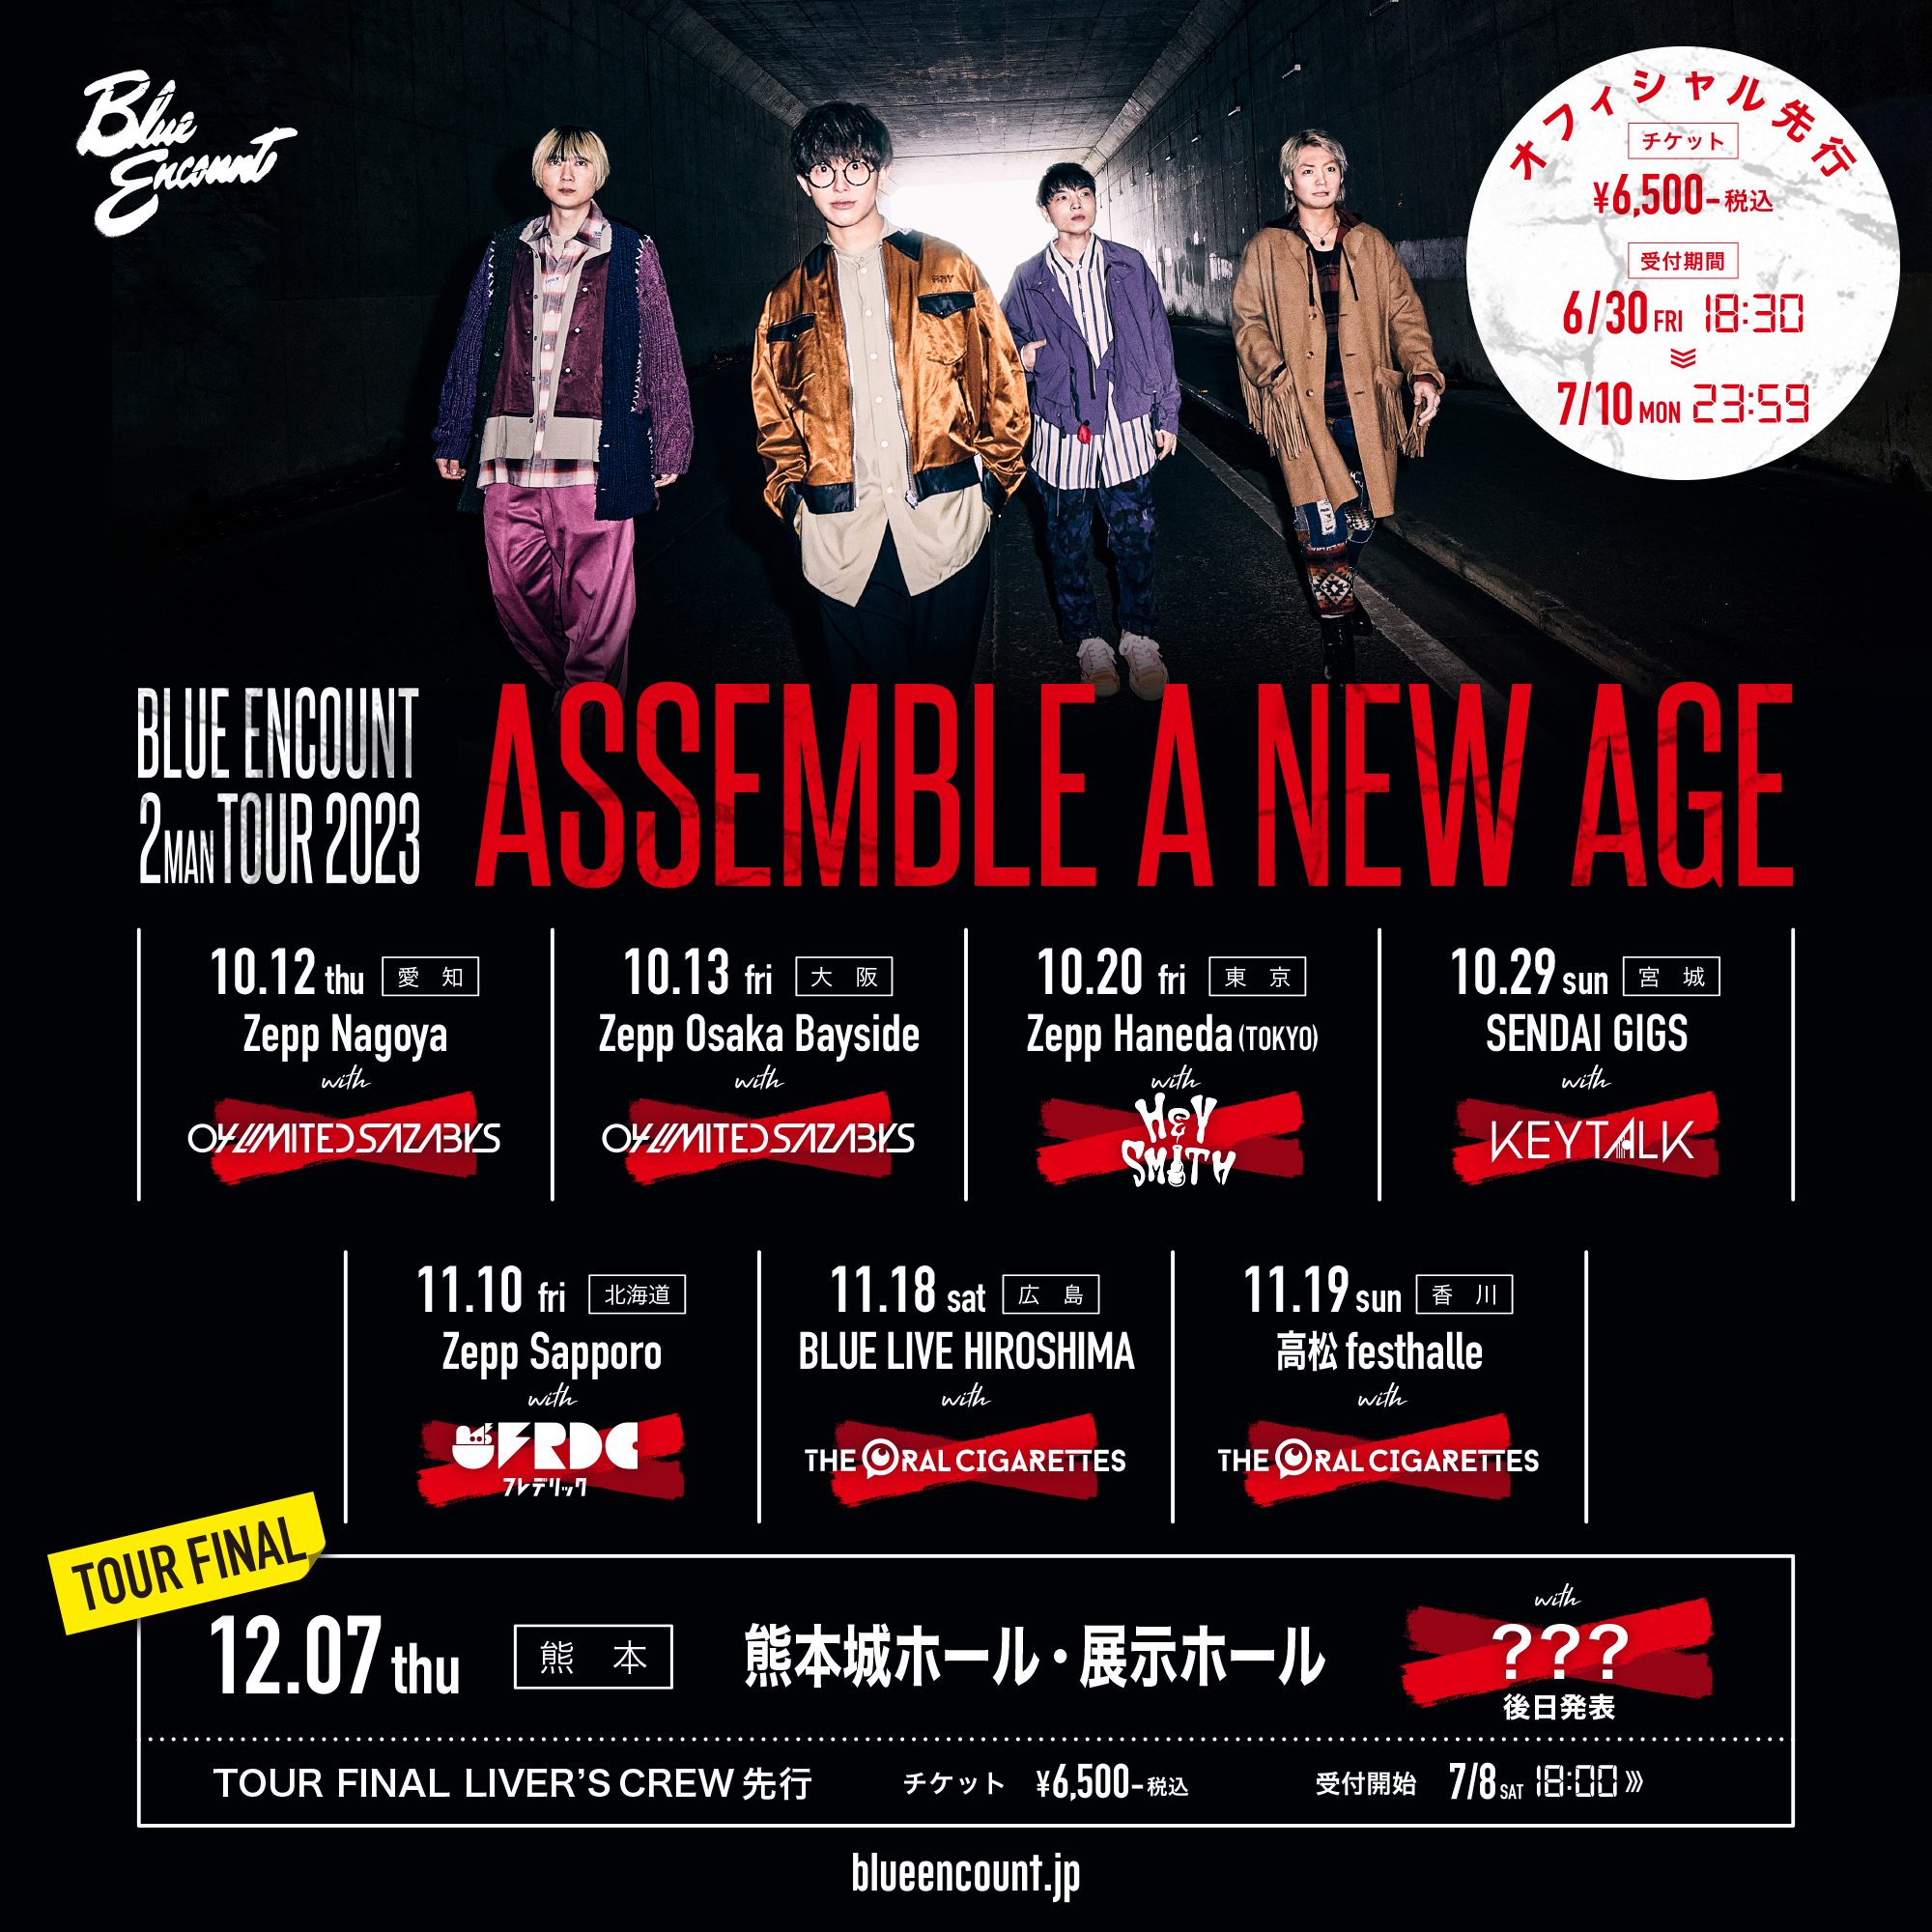 BLUE ENCOUNT 2MAN TOUR 2023 "ASSEMBLE A NEW AGE" 出演決定！